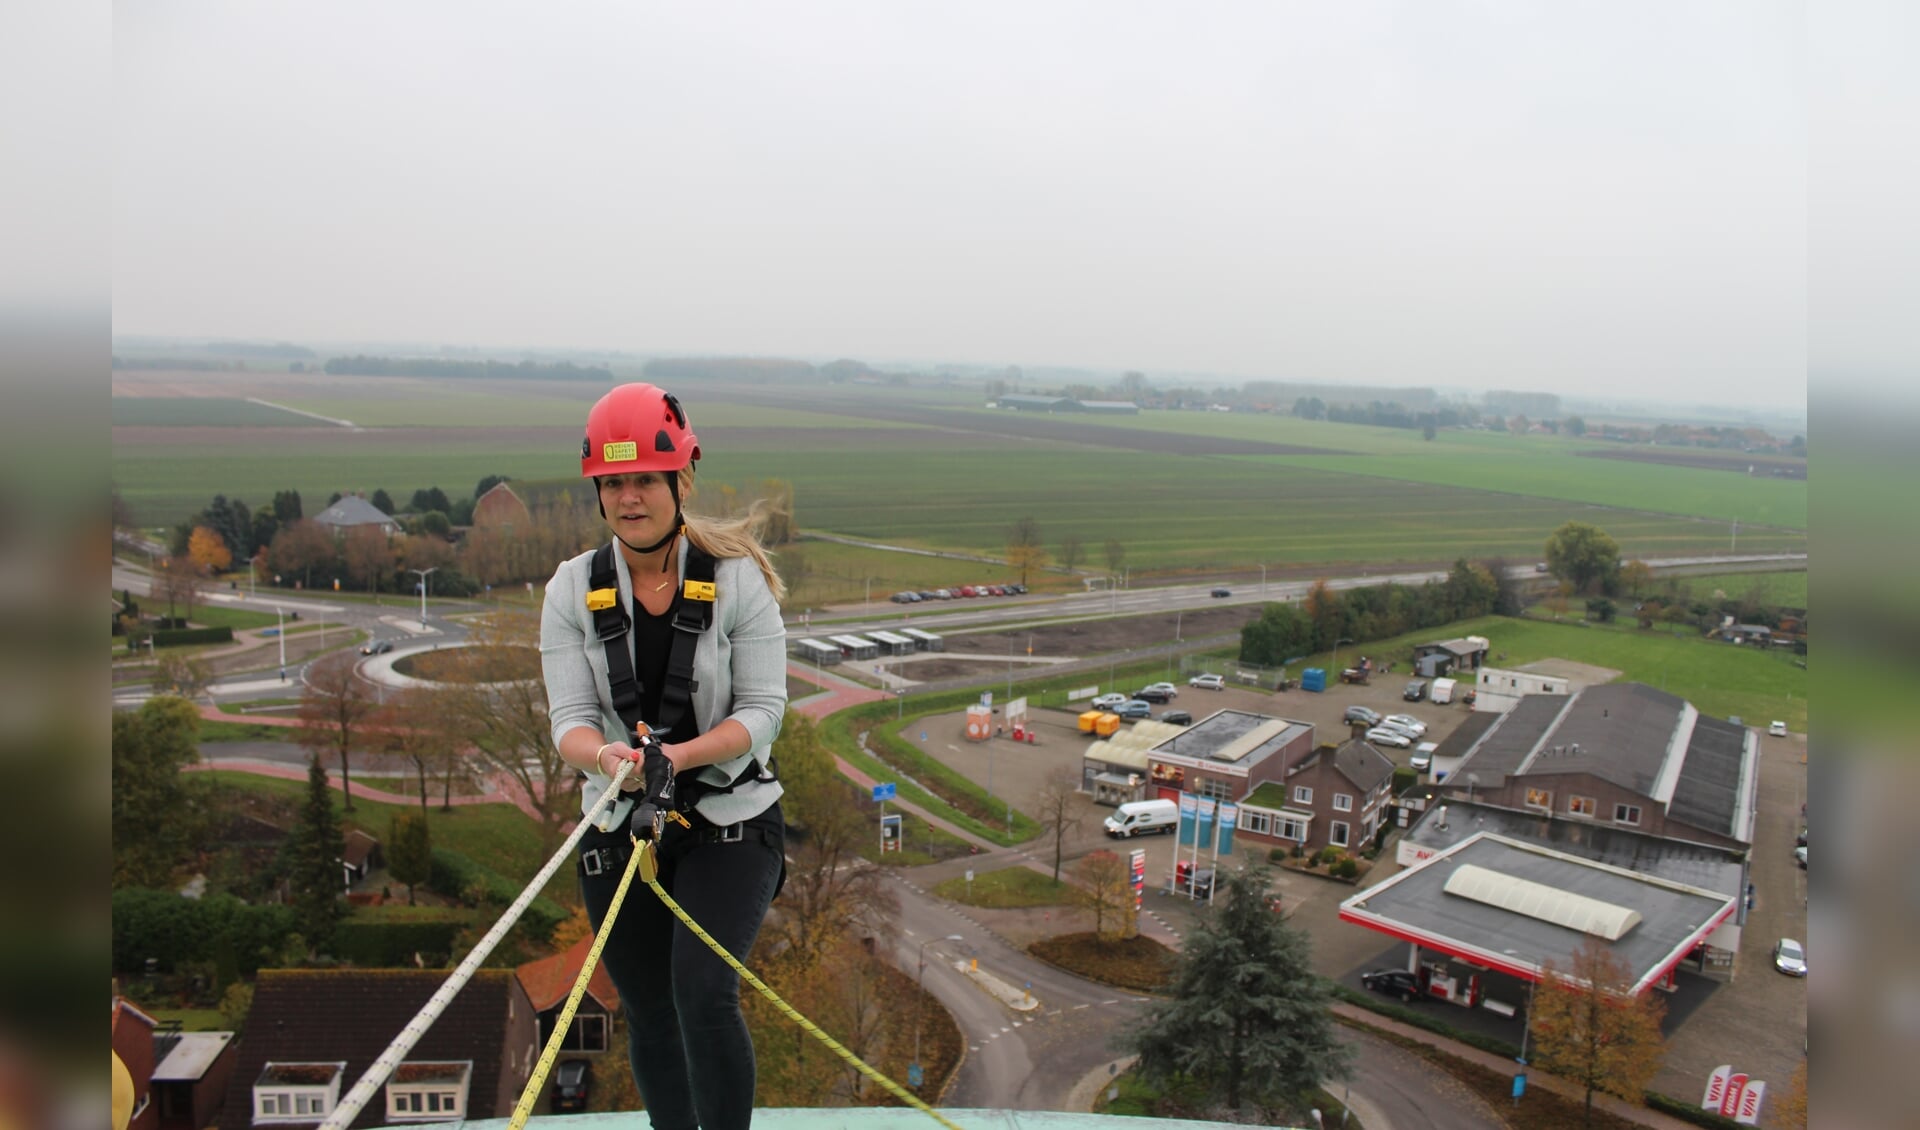 Esther Prent klom in november vorig jaar nog op het dak van de Watertoren om de Vuelta 2020 van de daken te schreeuwen. 